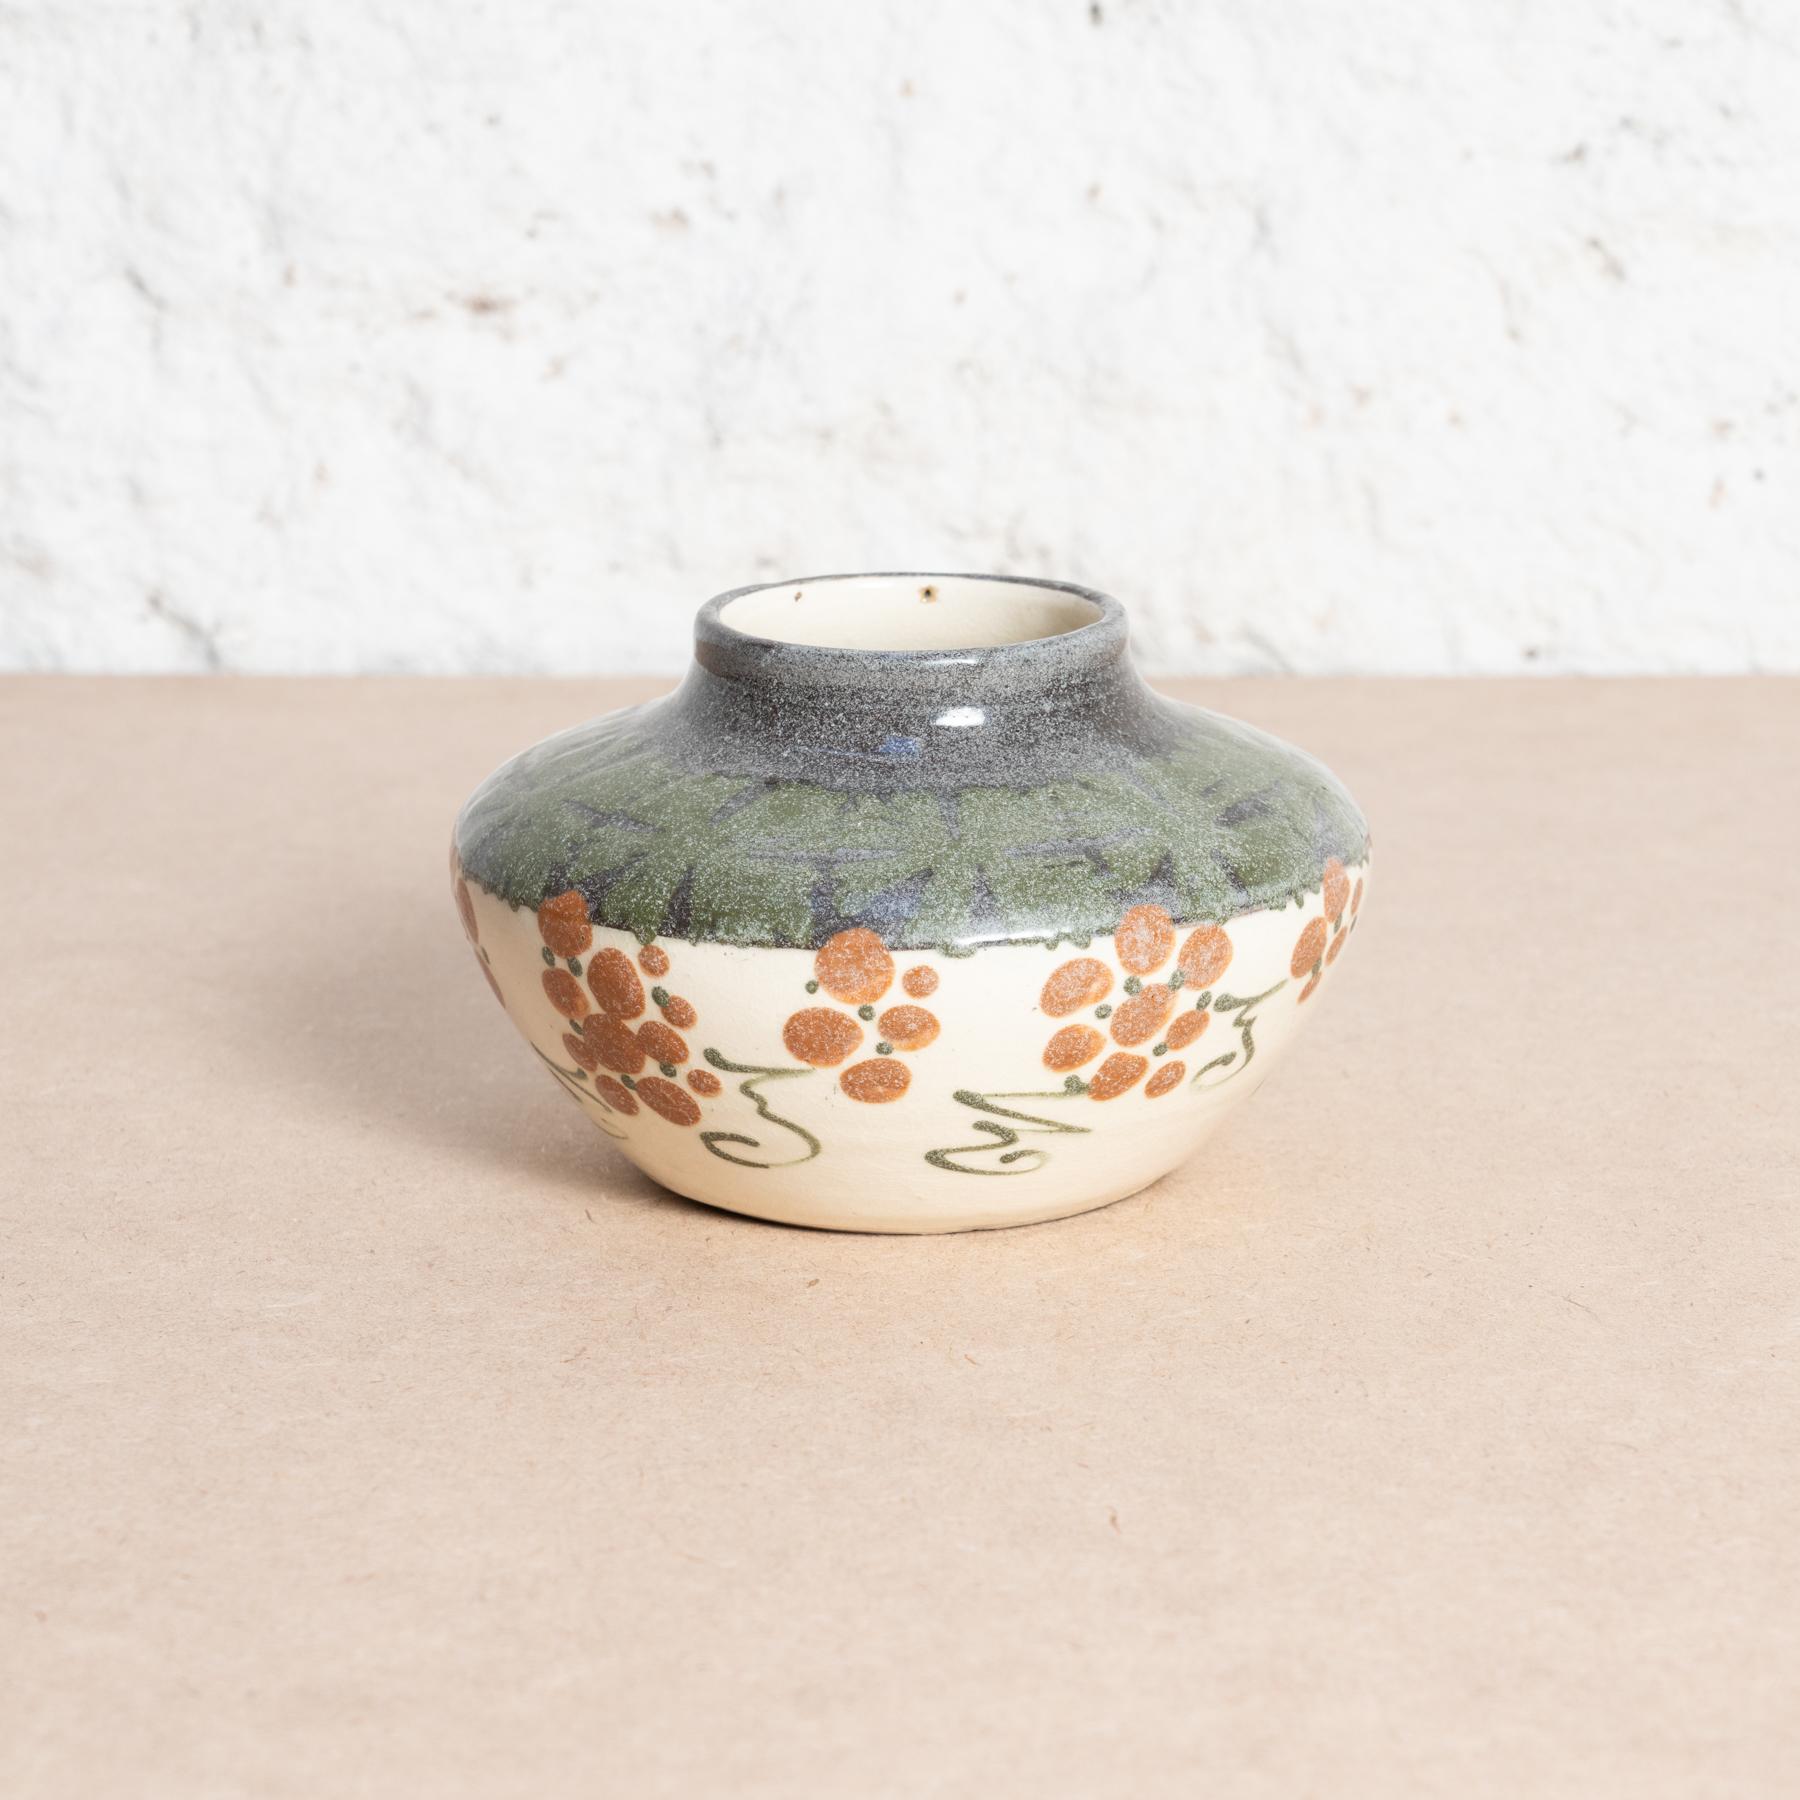 Vase en poterie peint à la main par Elchinger, vers 1960.

Fabriqué en France.

Signé.

En état d'origine, avec de légères usures dues à l'âge et à l'utilisation, préservant une belle patine.

Matériau :
Céramique.
 